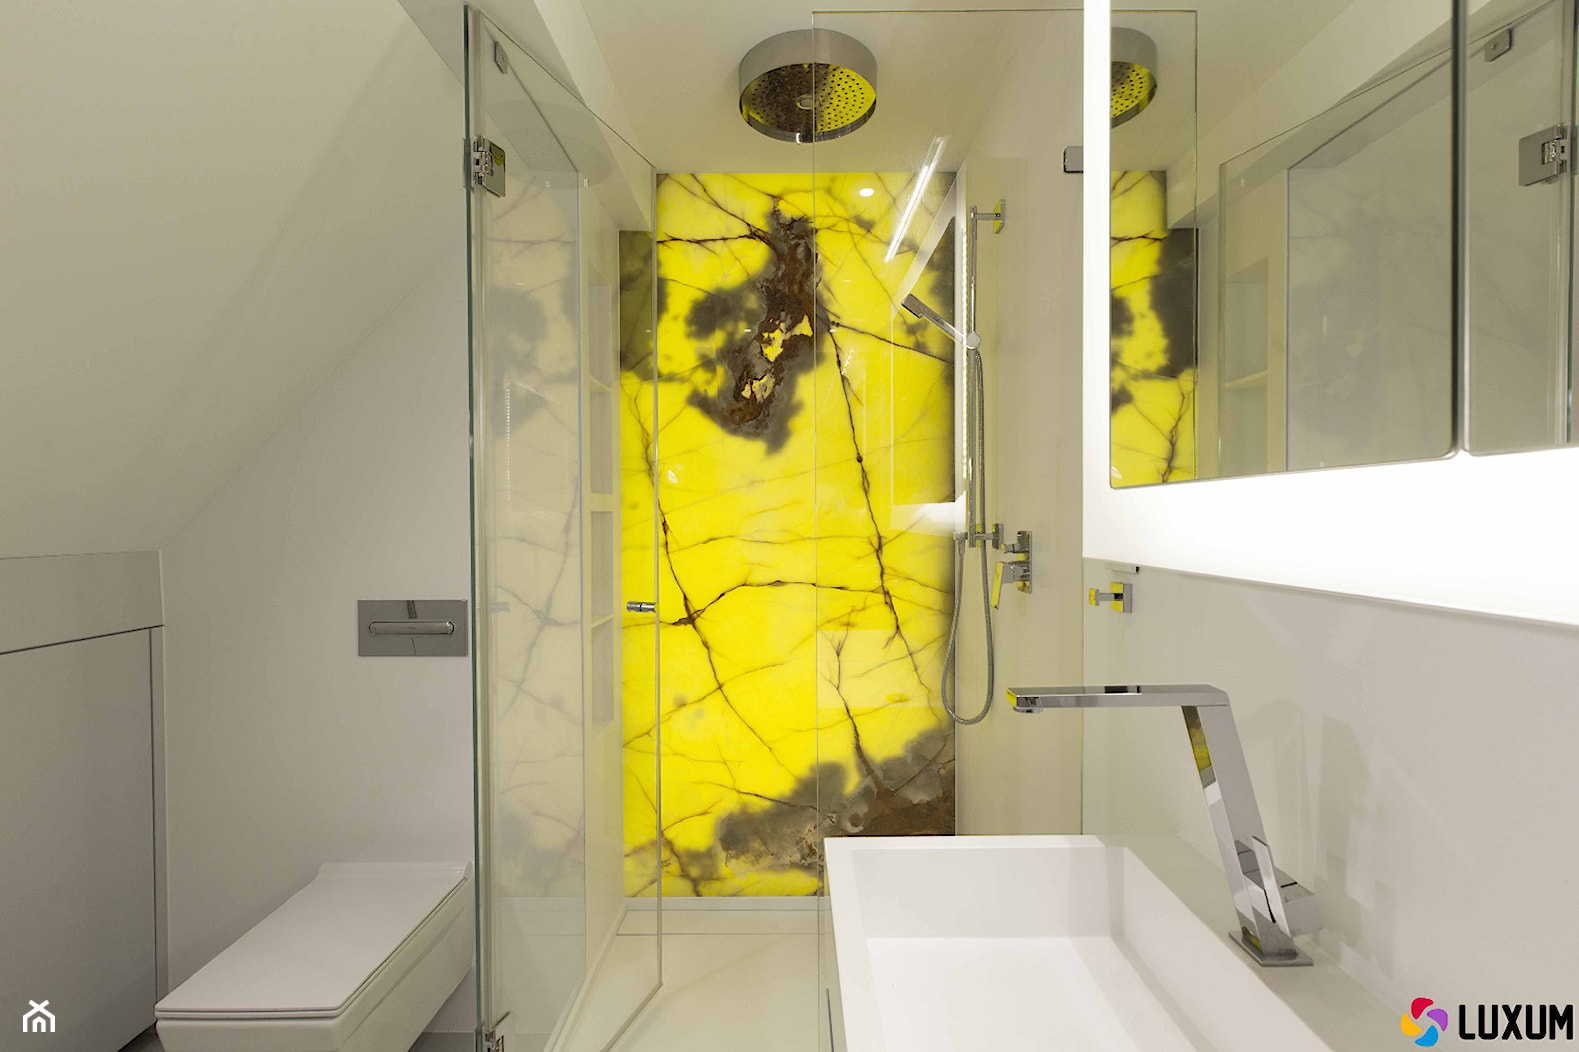 Ściany i wyposażenie sanitarne z nowoczesnego kompozytu Corian. Dekor podświetlany z naturalnego onyksu. - zdjęcie od Luxum - Homebook